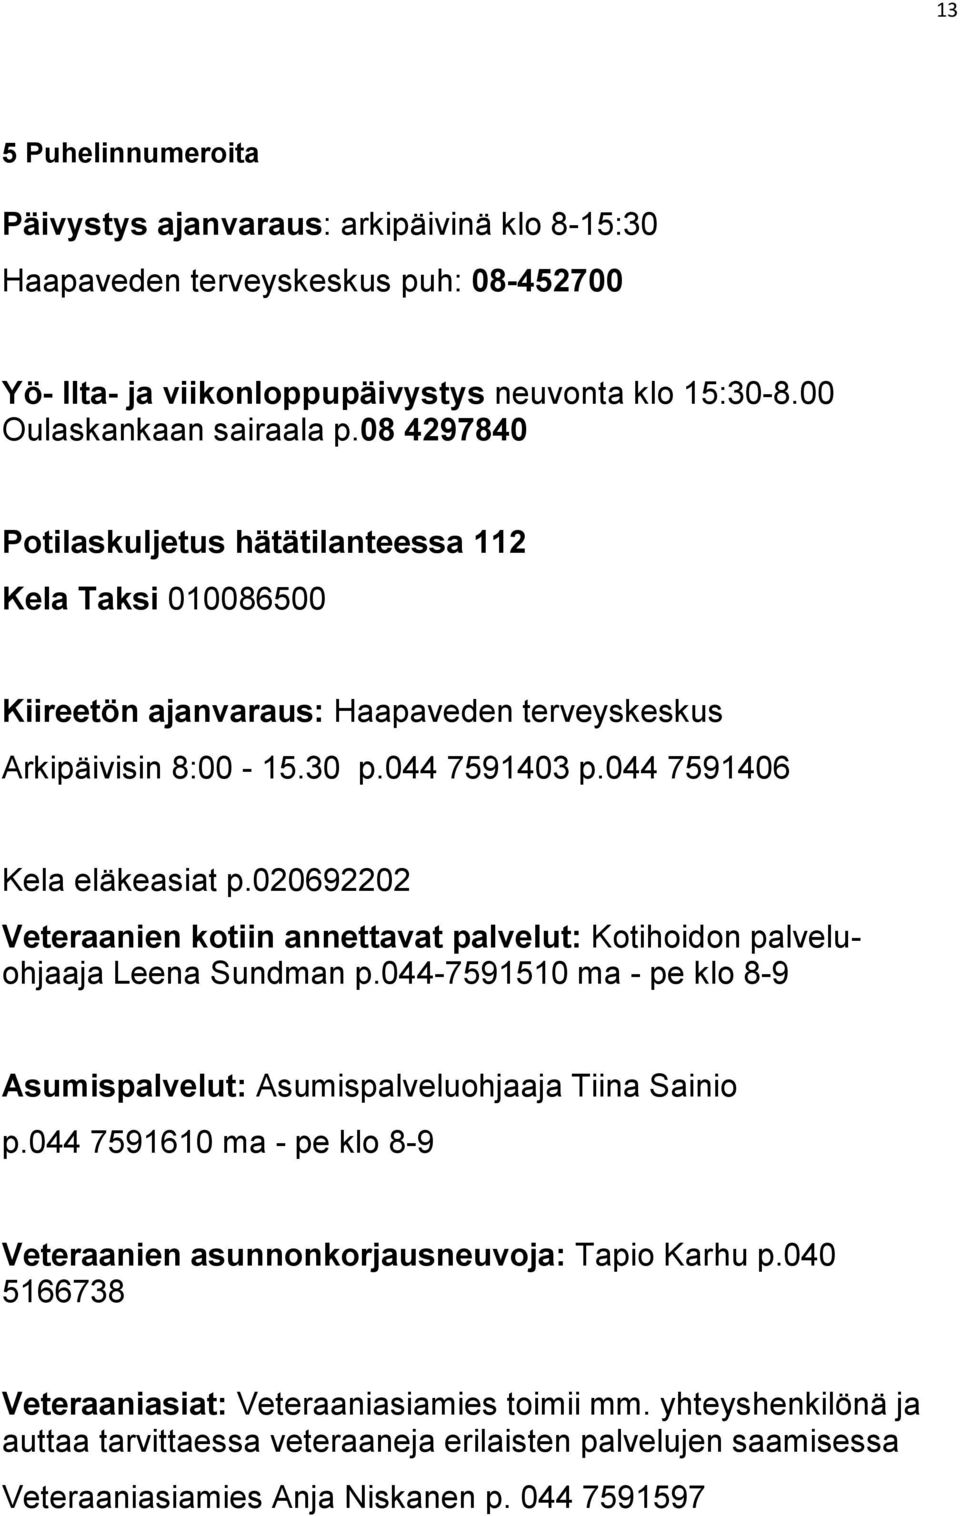 020692202 Veteraanien kotiin annettavat palvelut: Kotihoidon palveluohjaaja Leena Sundman p.044-7591510 ma - pe klo 8-9 Asumispalvelut: Asumispalveluohjaaja Tiina Sainio p.